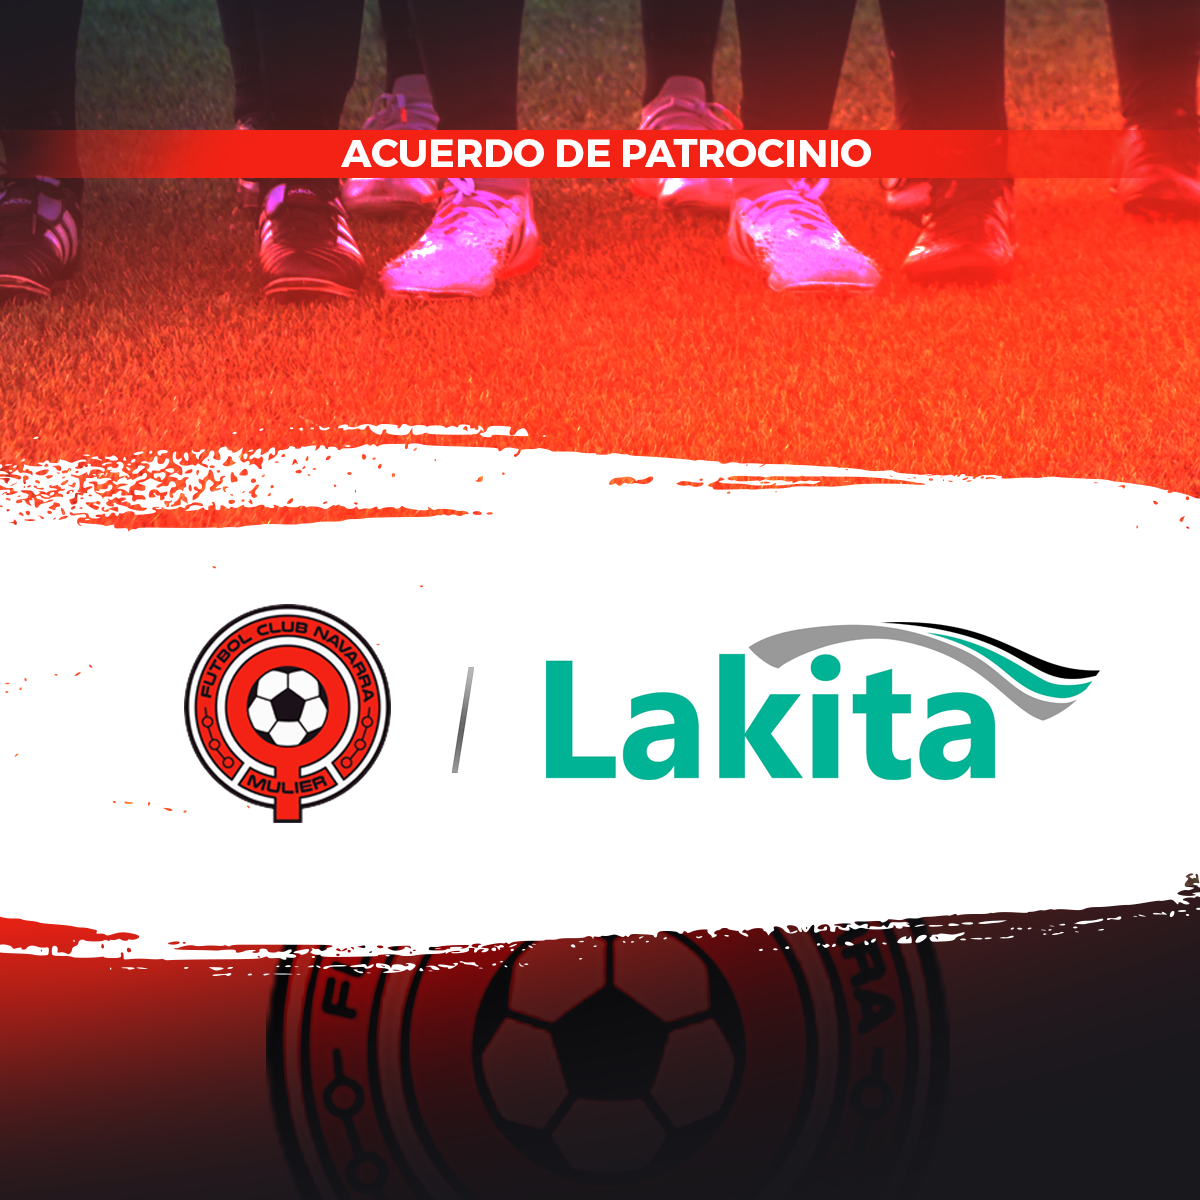 Acuerdo de patrocinio entre Lakita y Mulier Fútbol Club Navarra